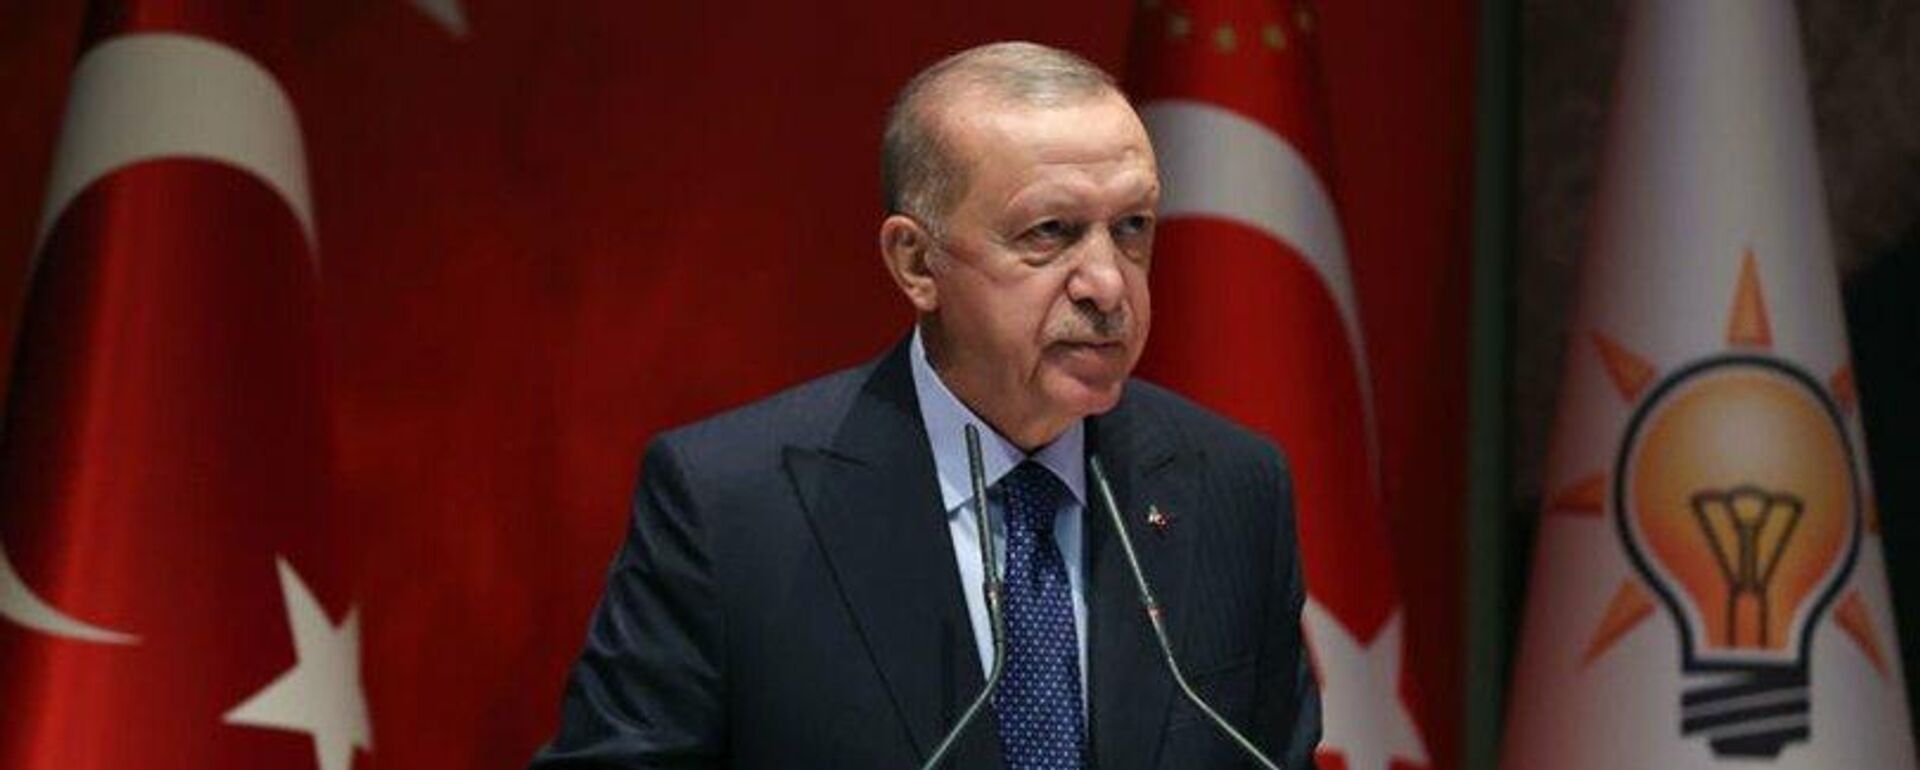 Cumhurbaşkanı Erdoğan: 2023 seçimleri, ülkemiz ve milletimiz için bir dönüm noktası olacaktır - Sputnik Türkiye, 1920, 22.02.2022